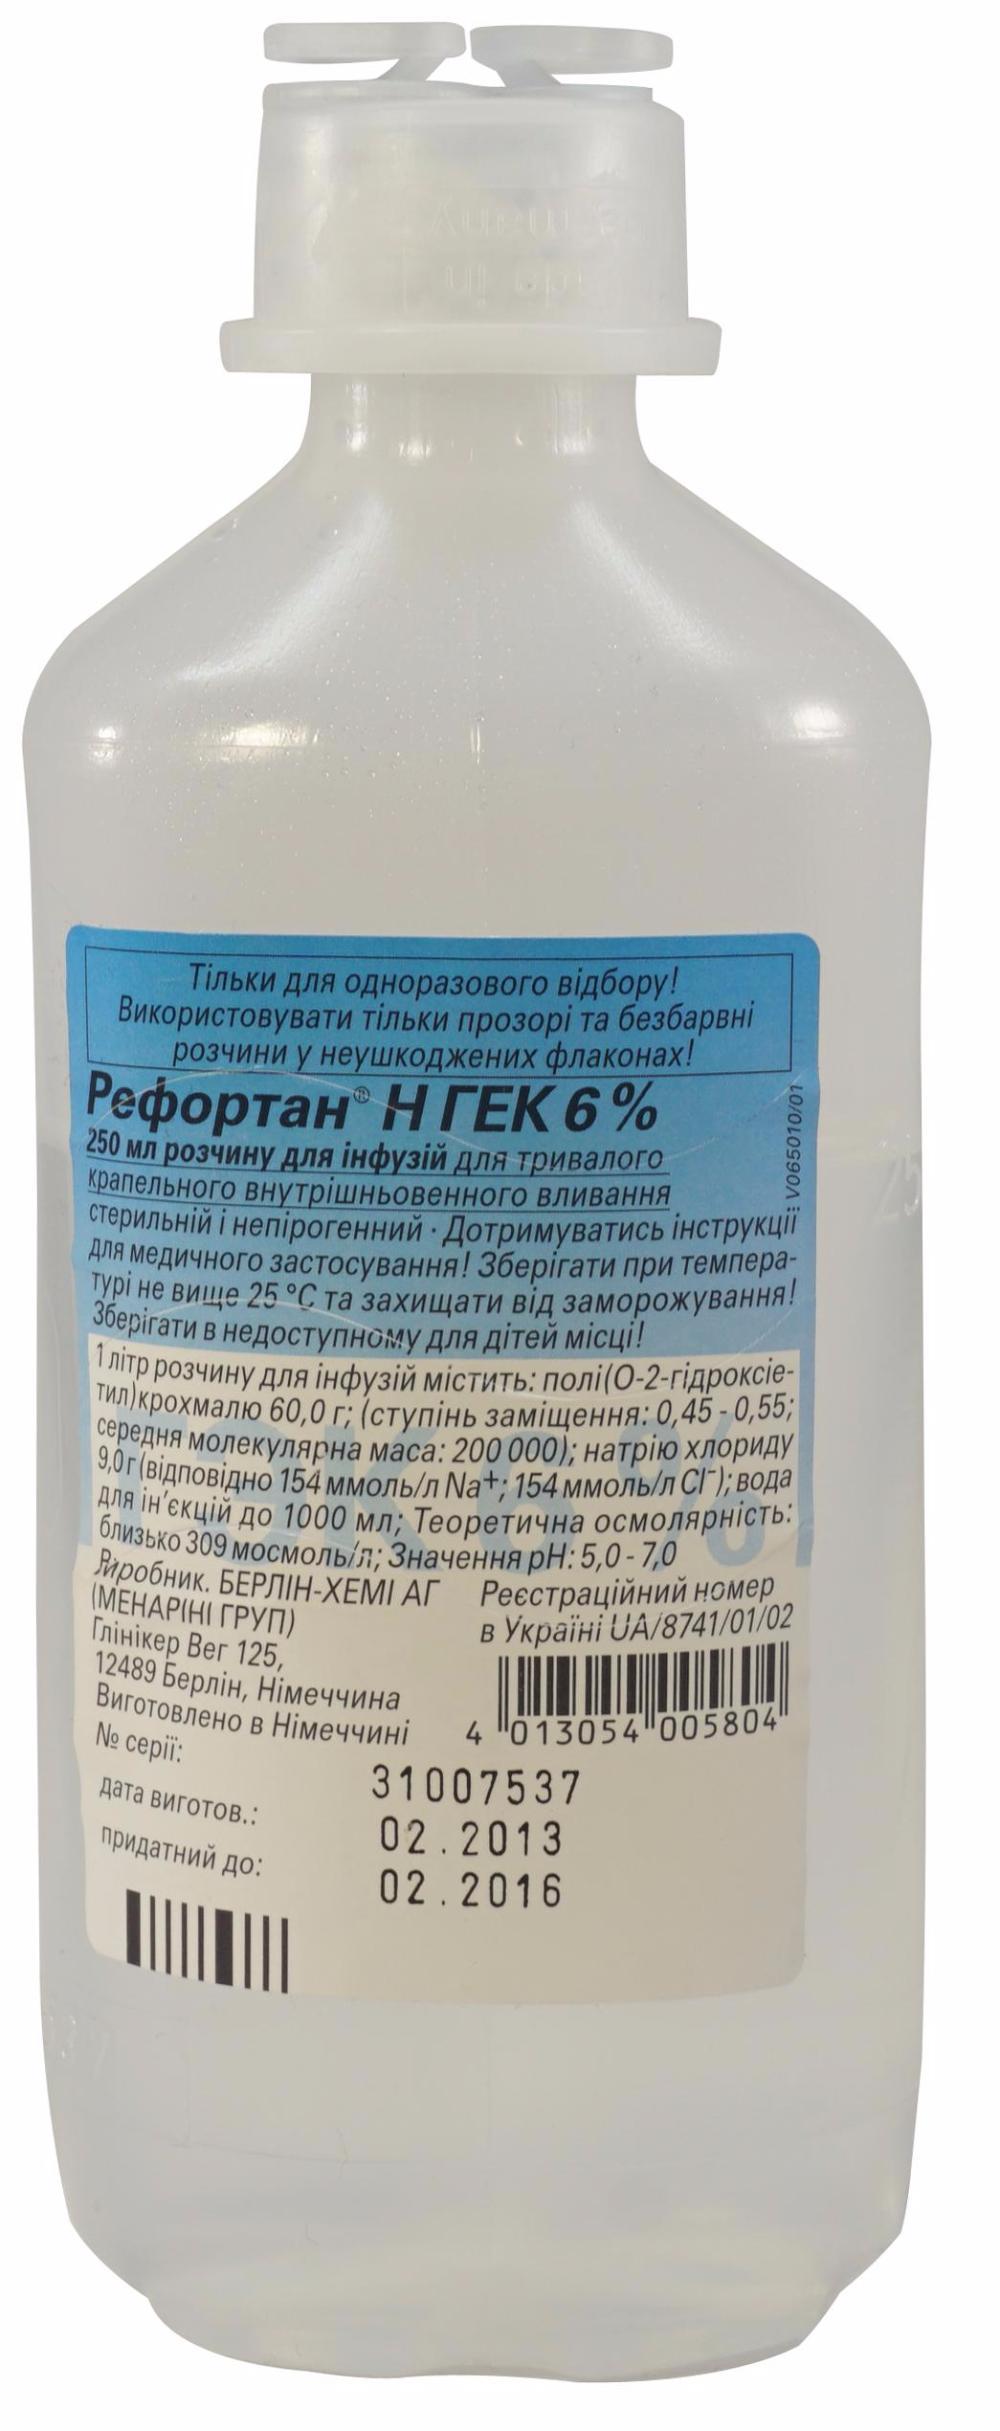 5173 ГЕК-ІНФУЗІЯ 6 % - Hydroxyethylstarch